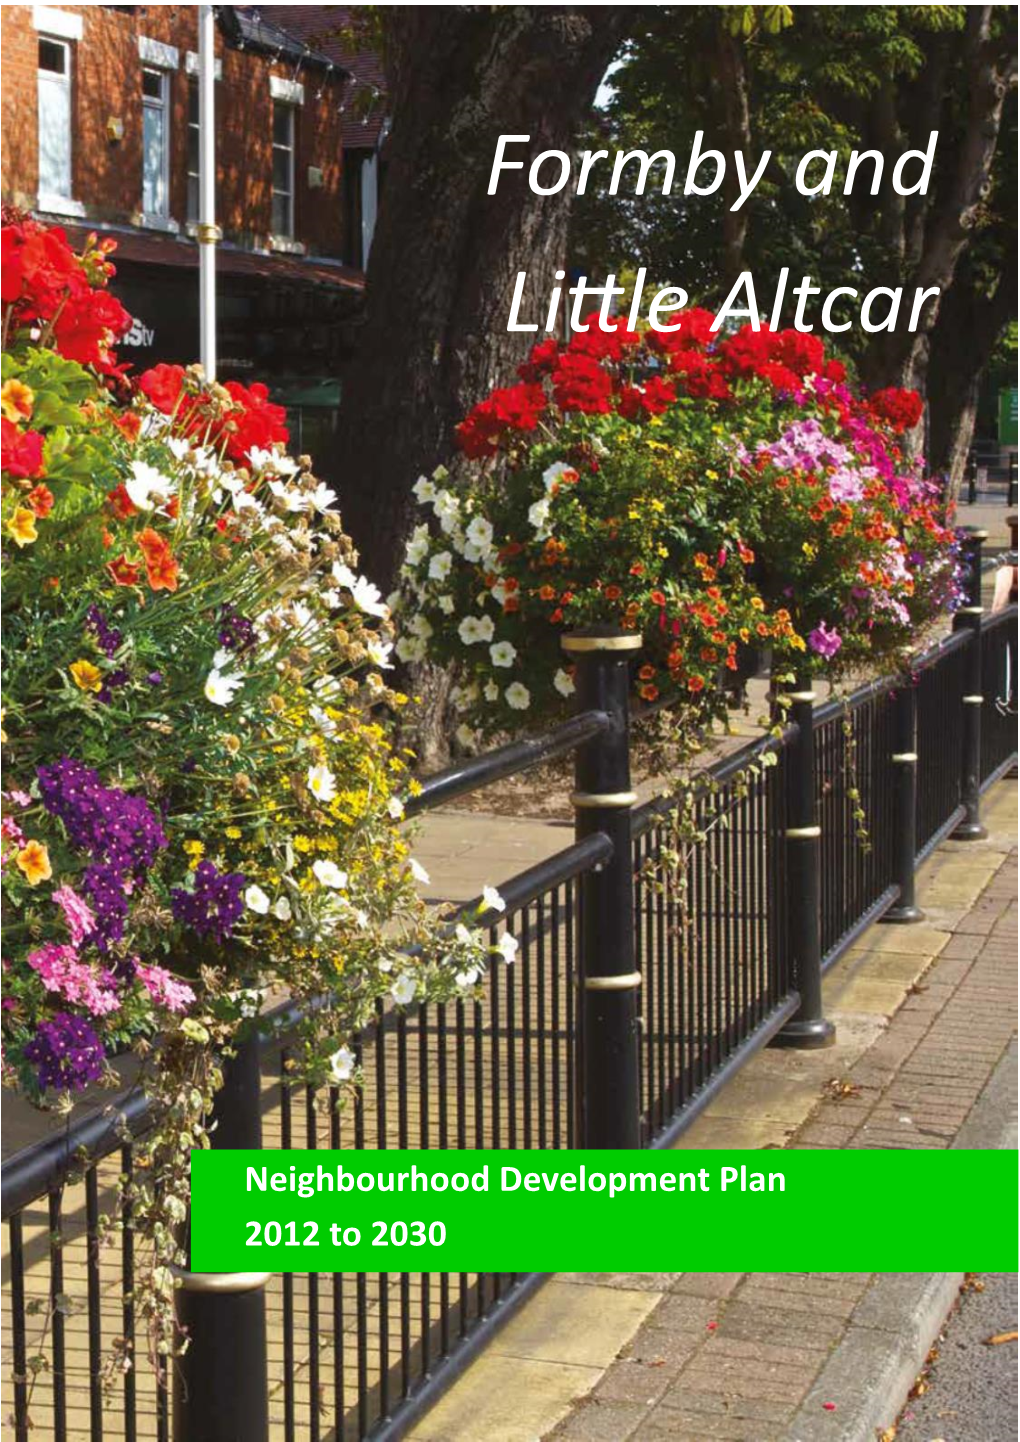 Formby and Little Altcar Neighbourhood Development Plan